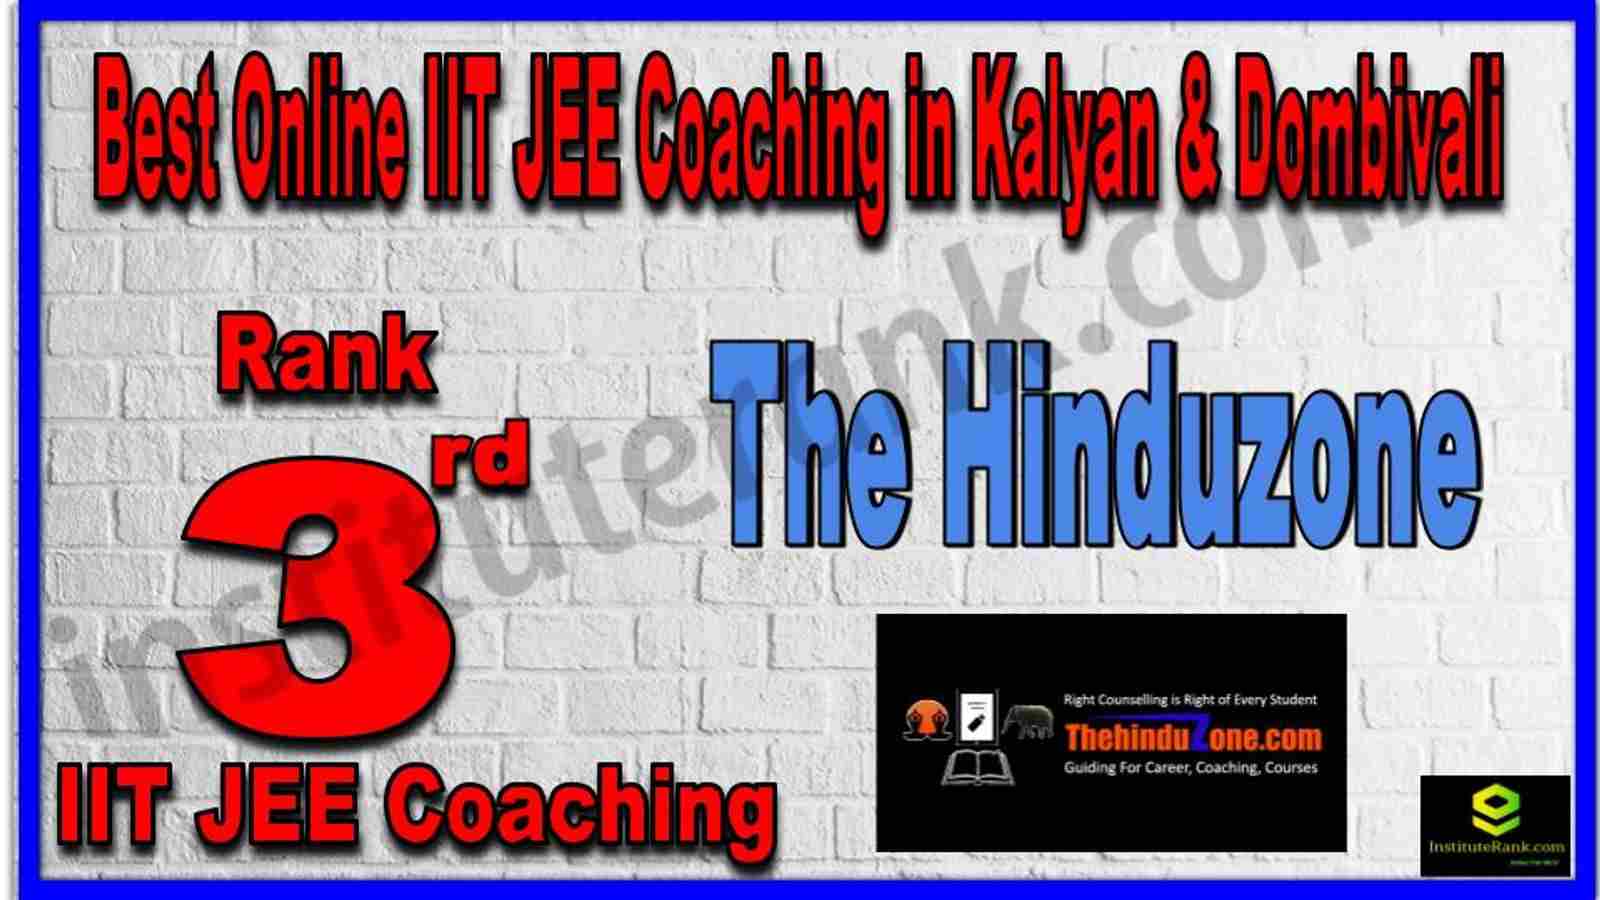 Rank 3rd Best Online IIT JEE Coaching in Kalyan & Dombivali 